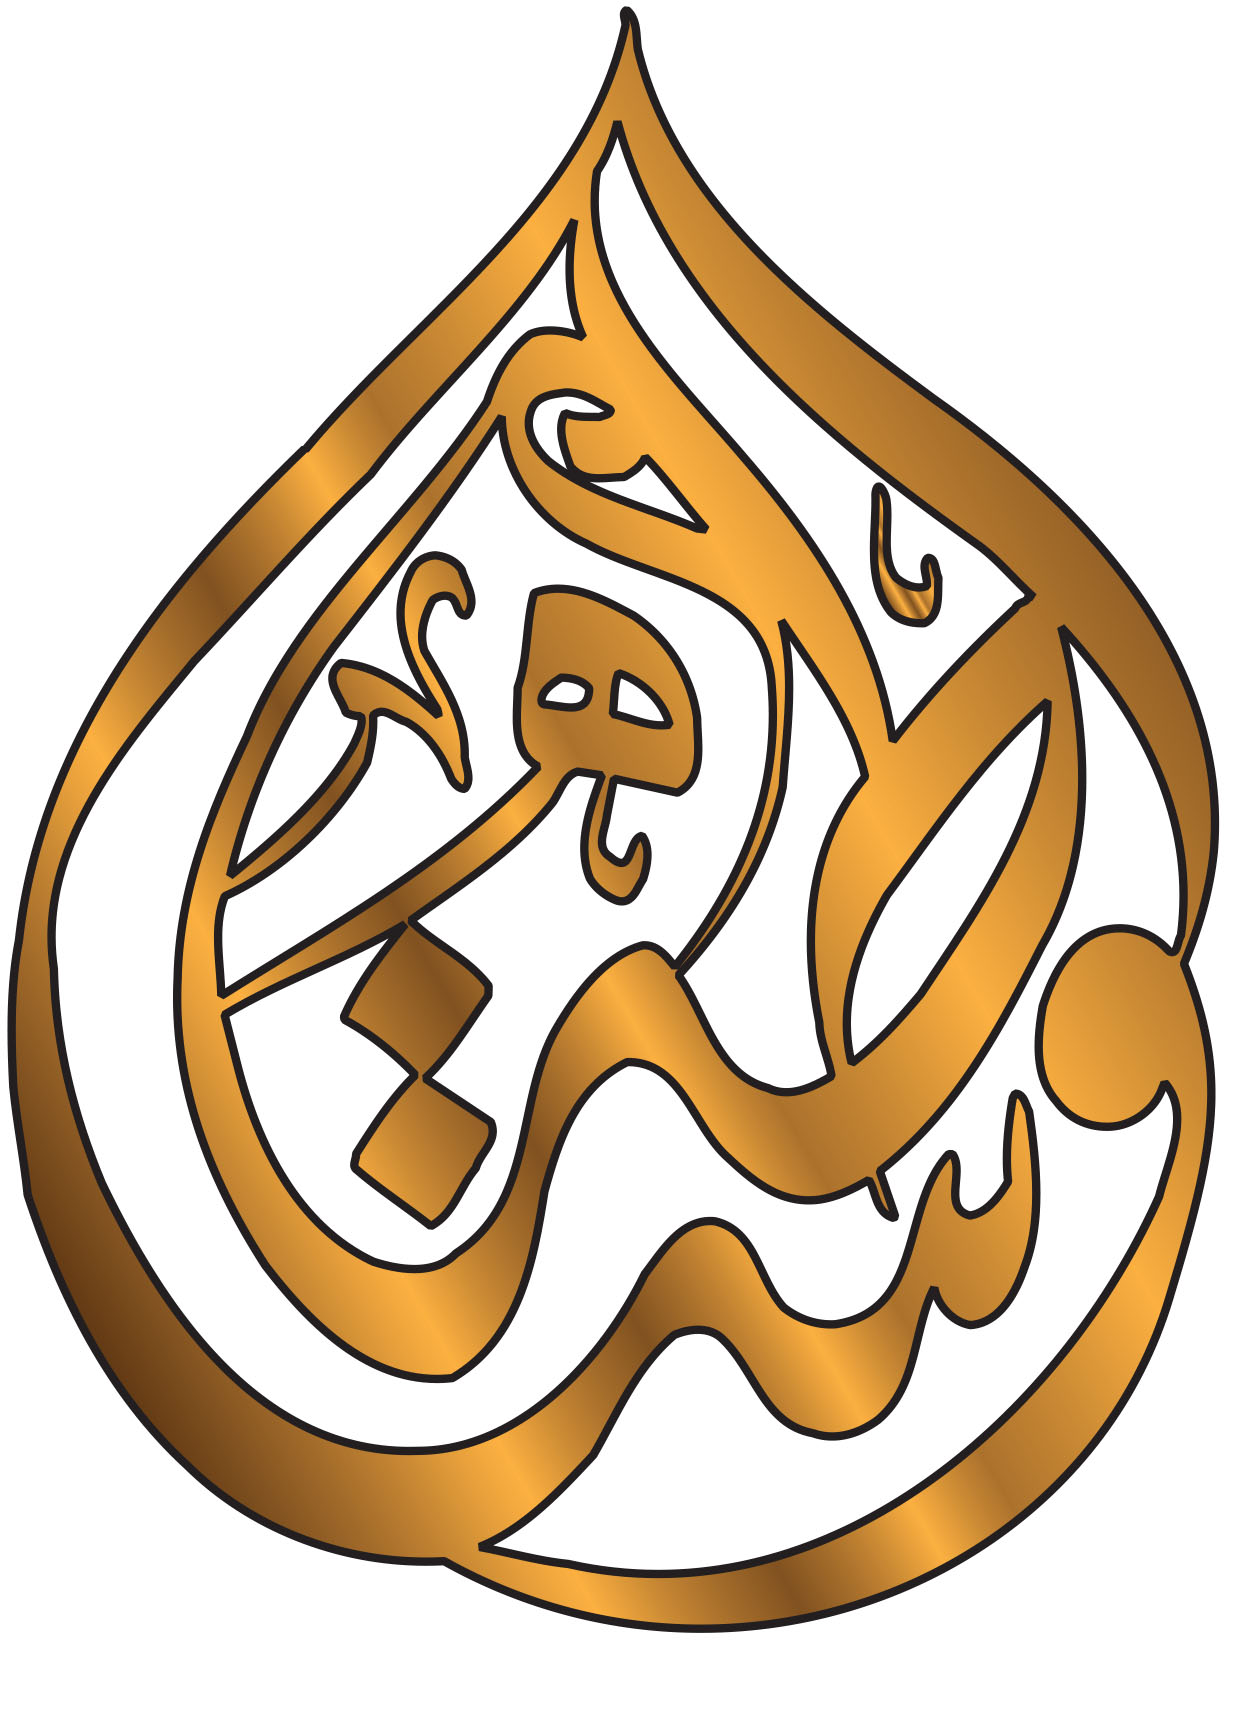 Wasata logo